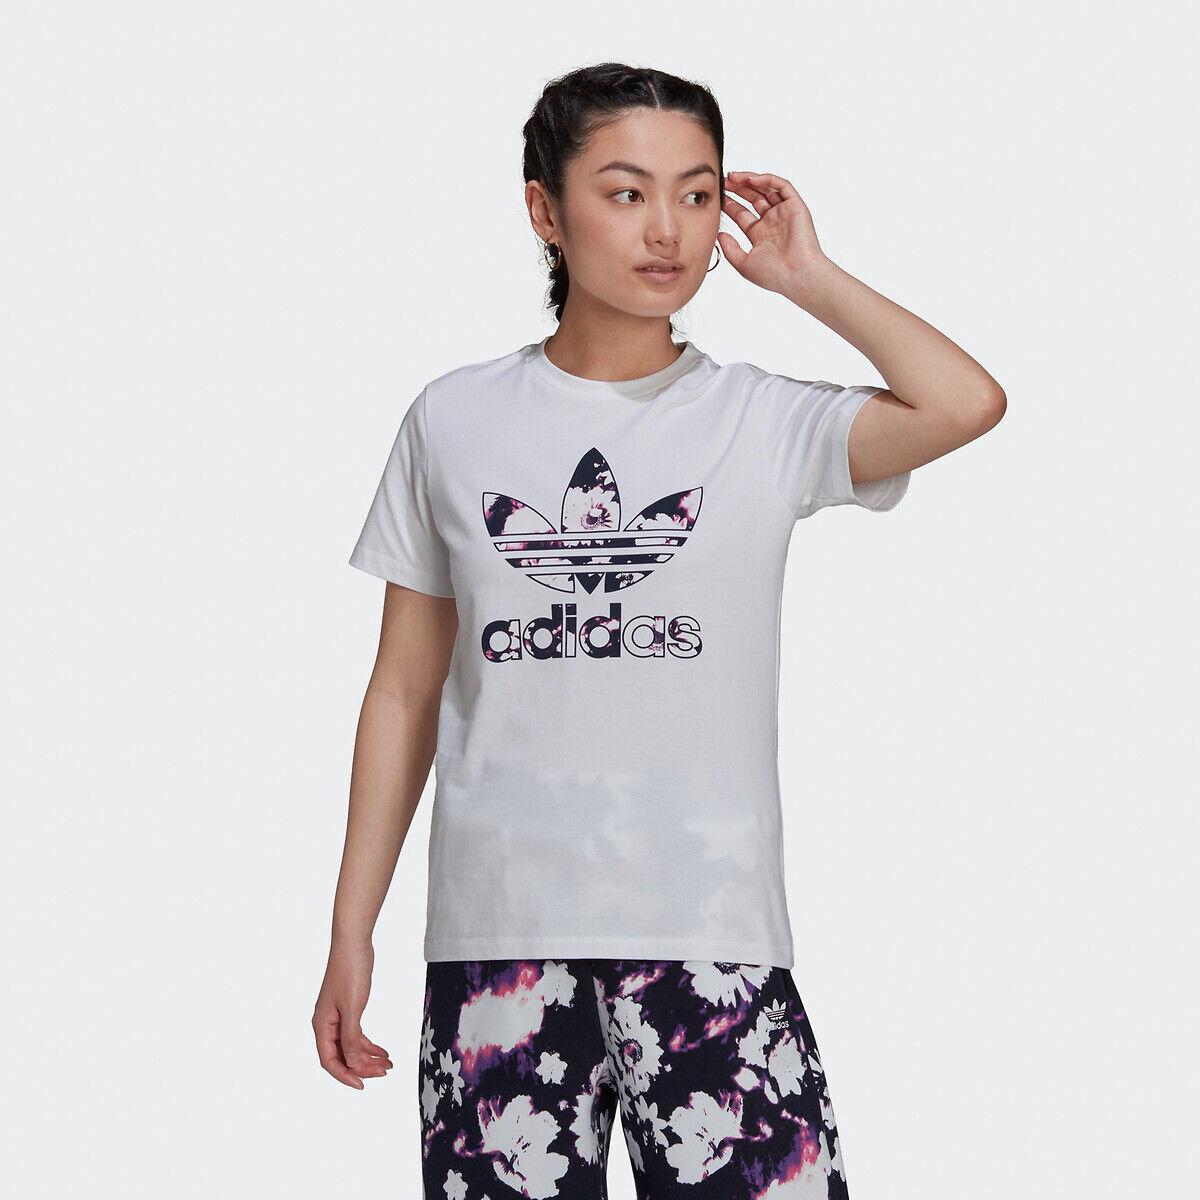 Adidas Originals T-shirt de mangas curtas, gola redonda   Branco